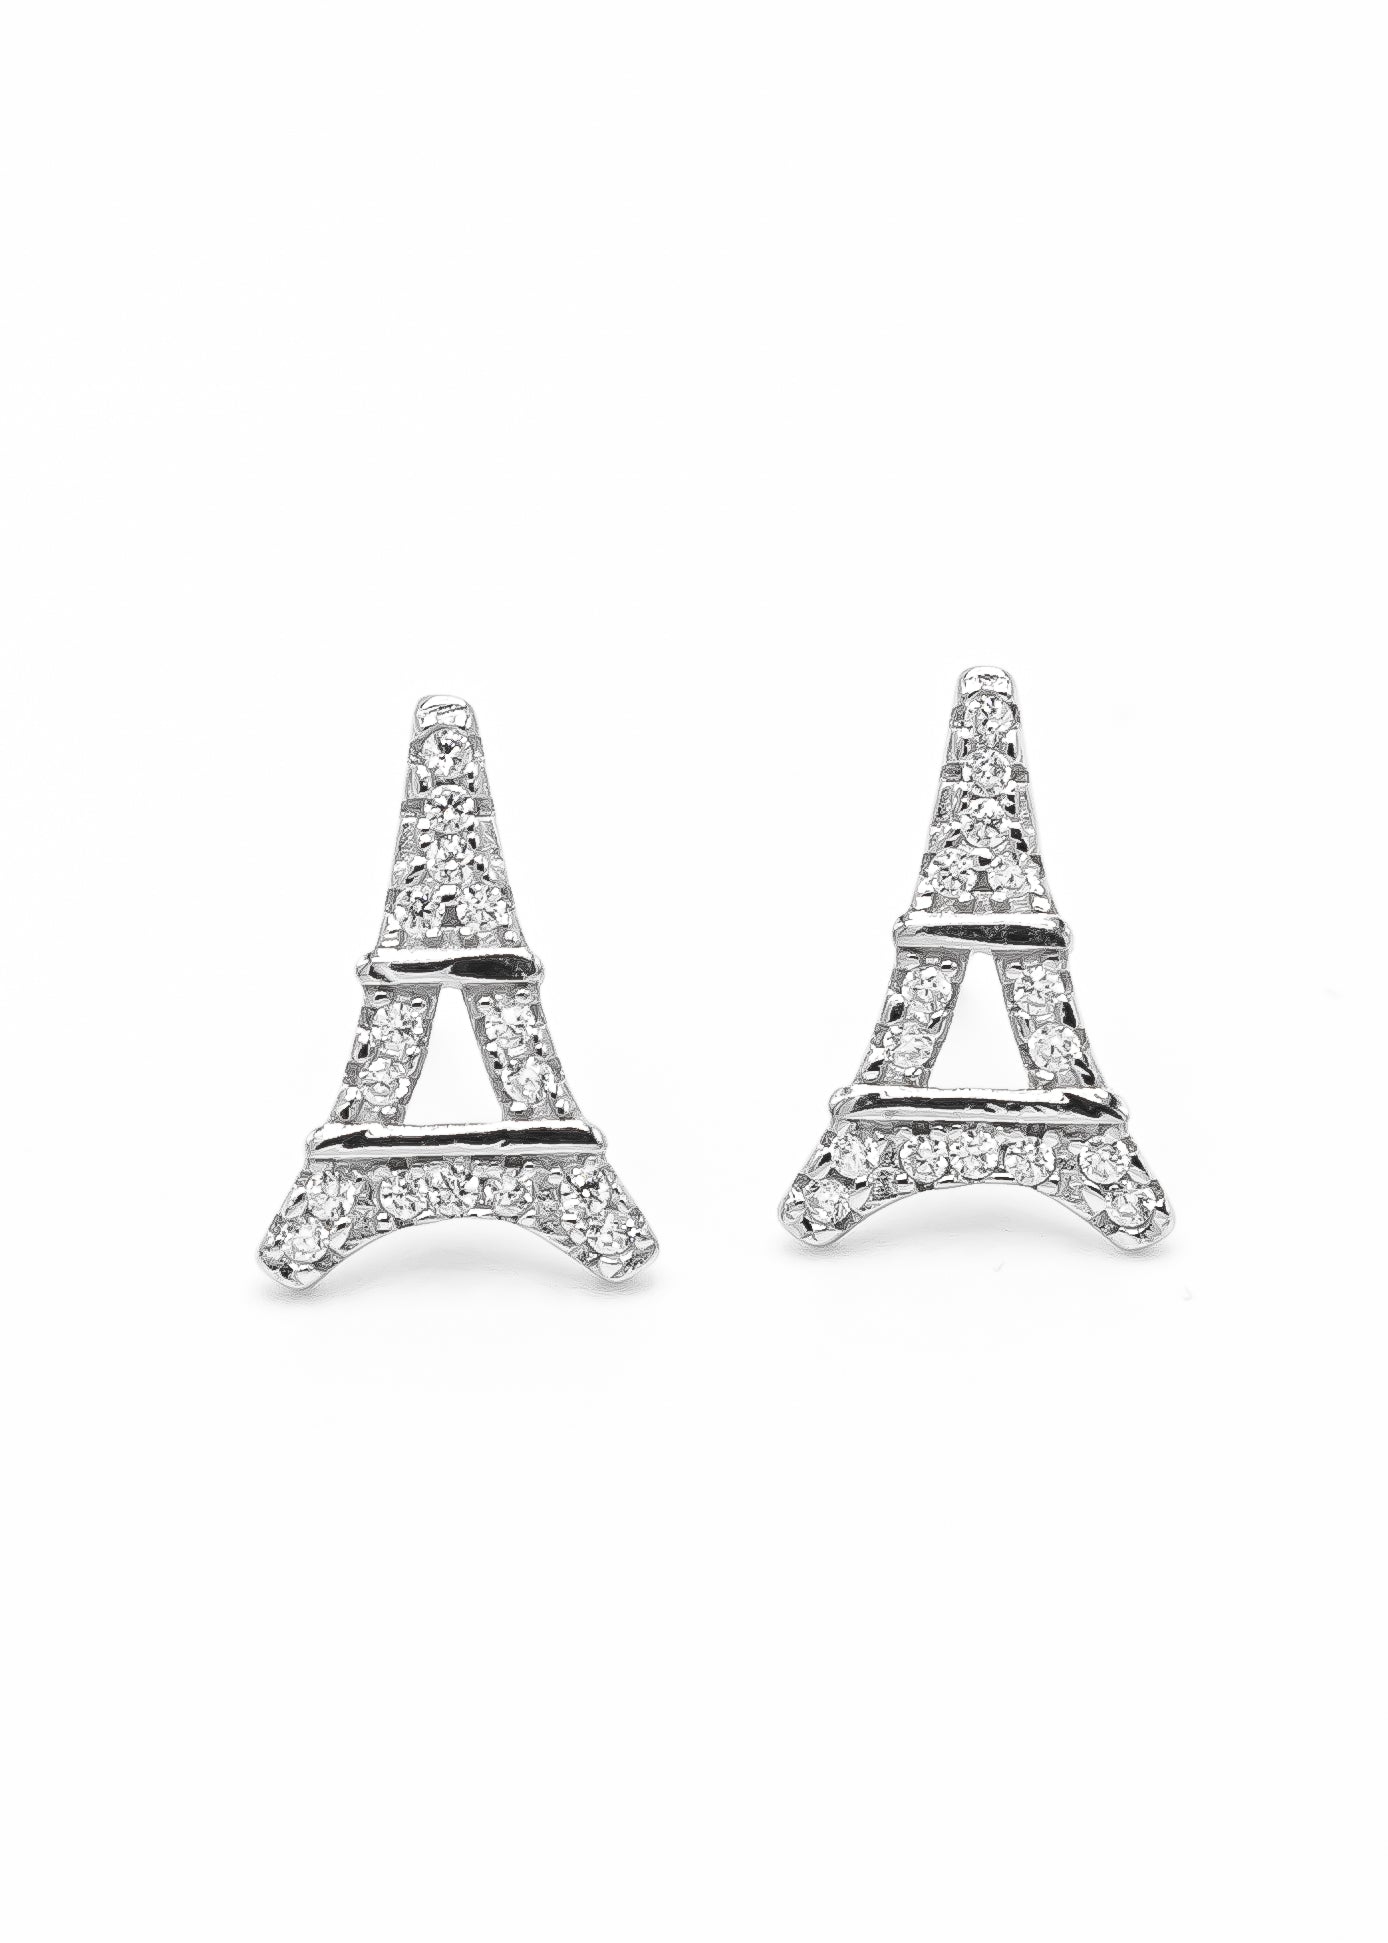 Eiffel Tower Stud Earrings